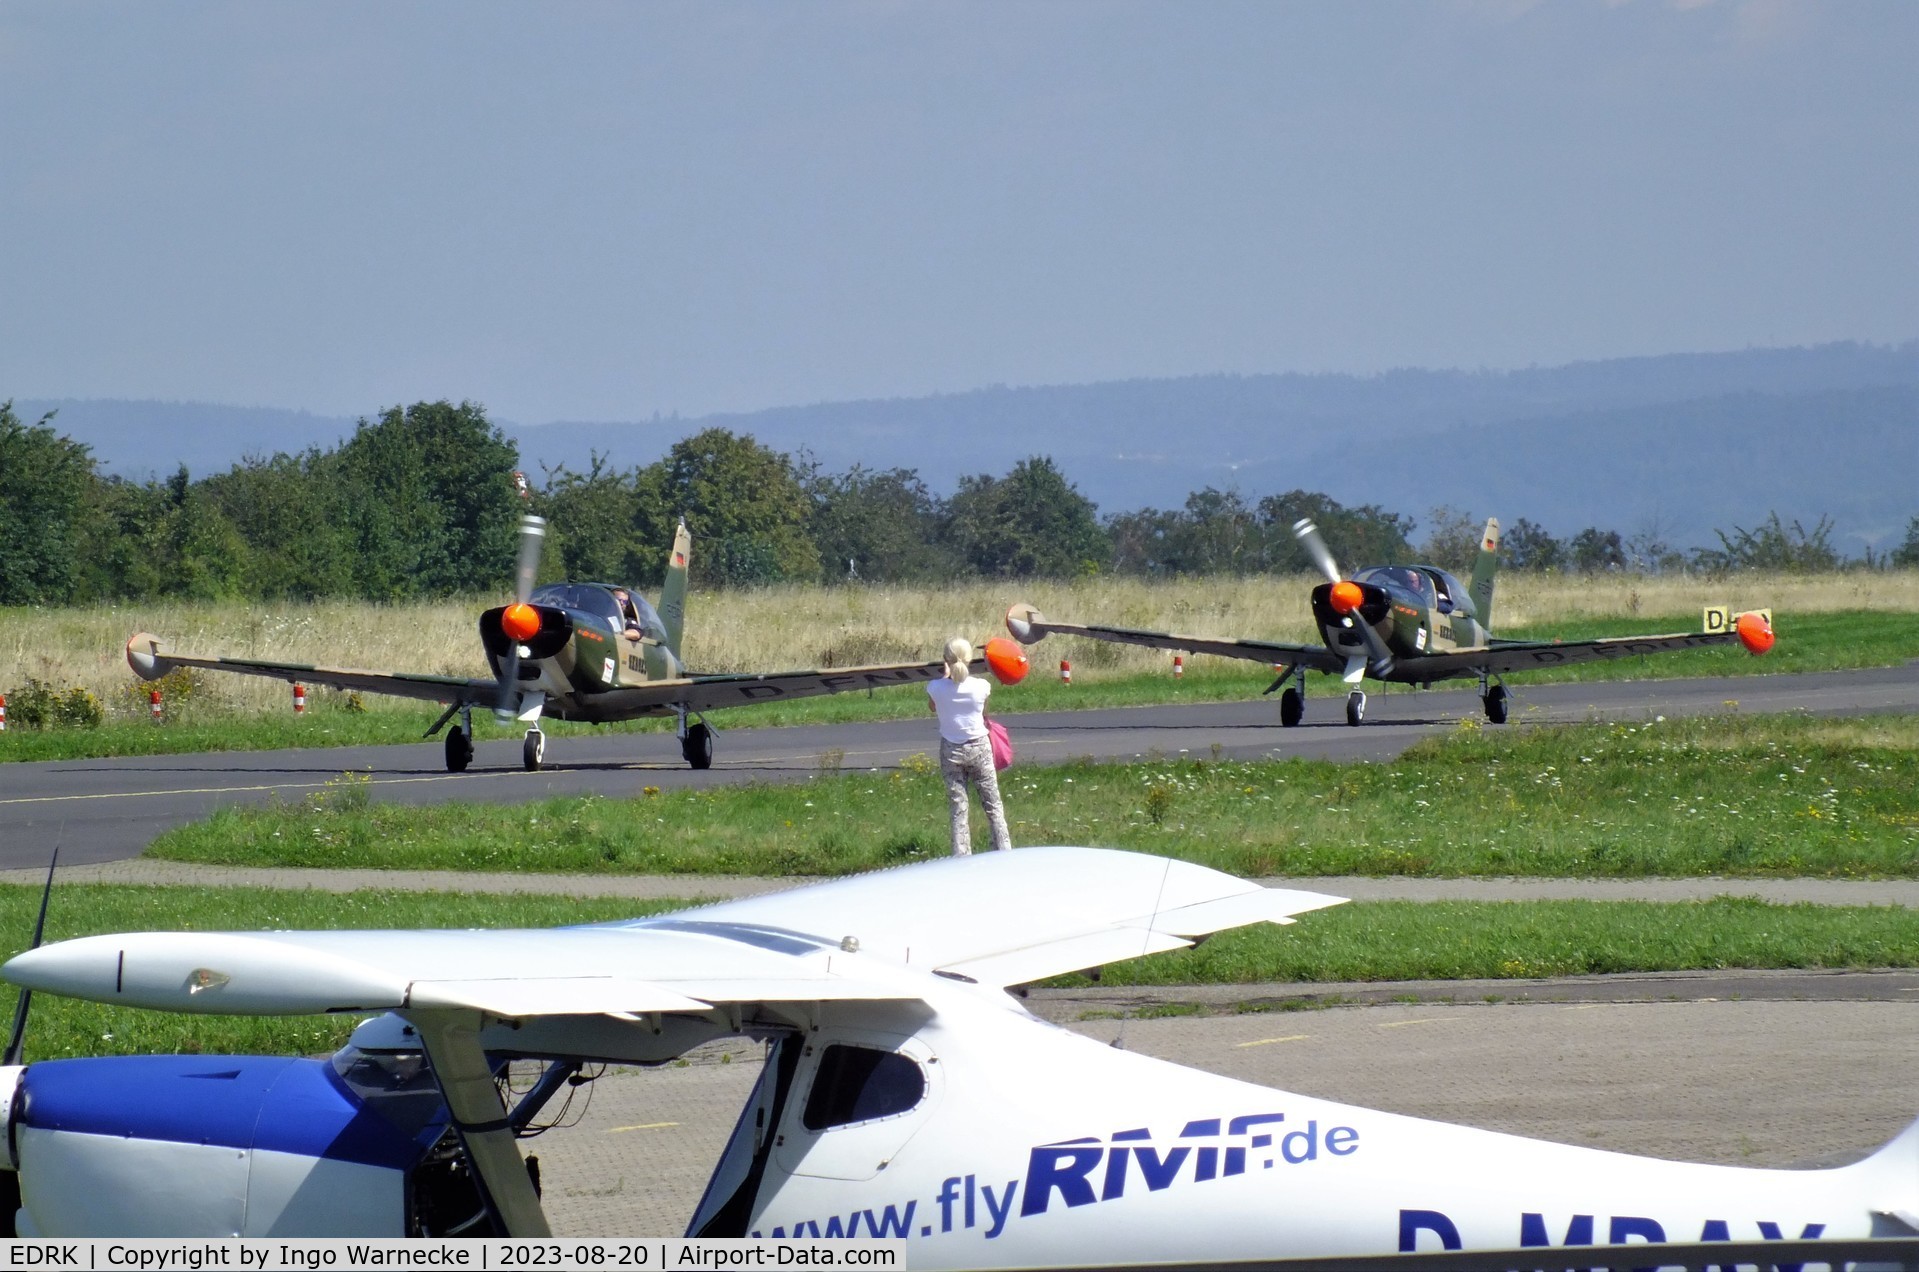 Koblenz Winningen Airport, Winningen, Mosel Germany (EDRK) - Team Niebergall with 2 SF.260s visiting at Koblenz-Winningen airfield